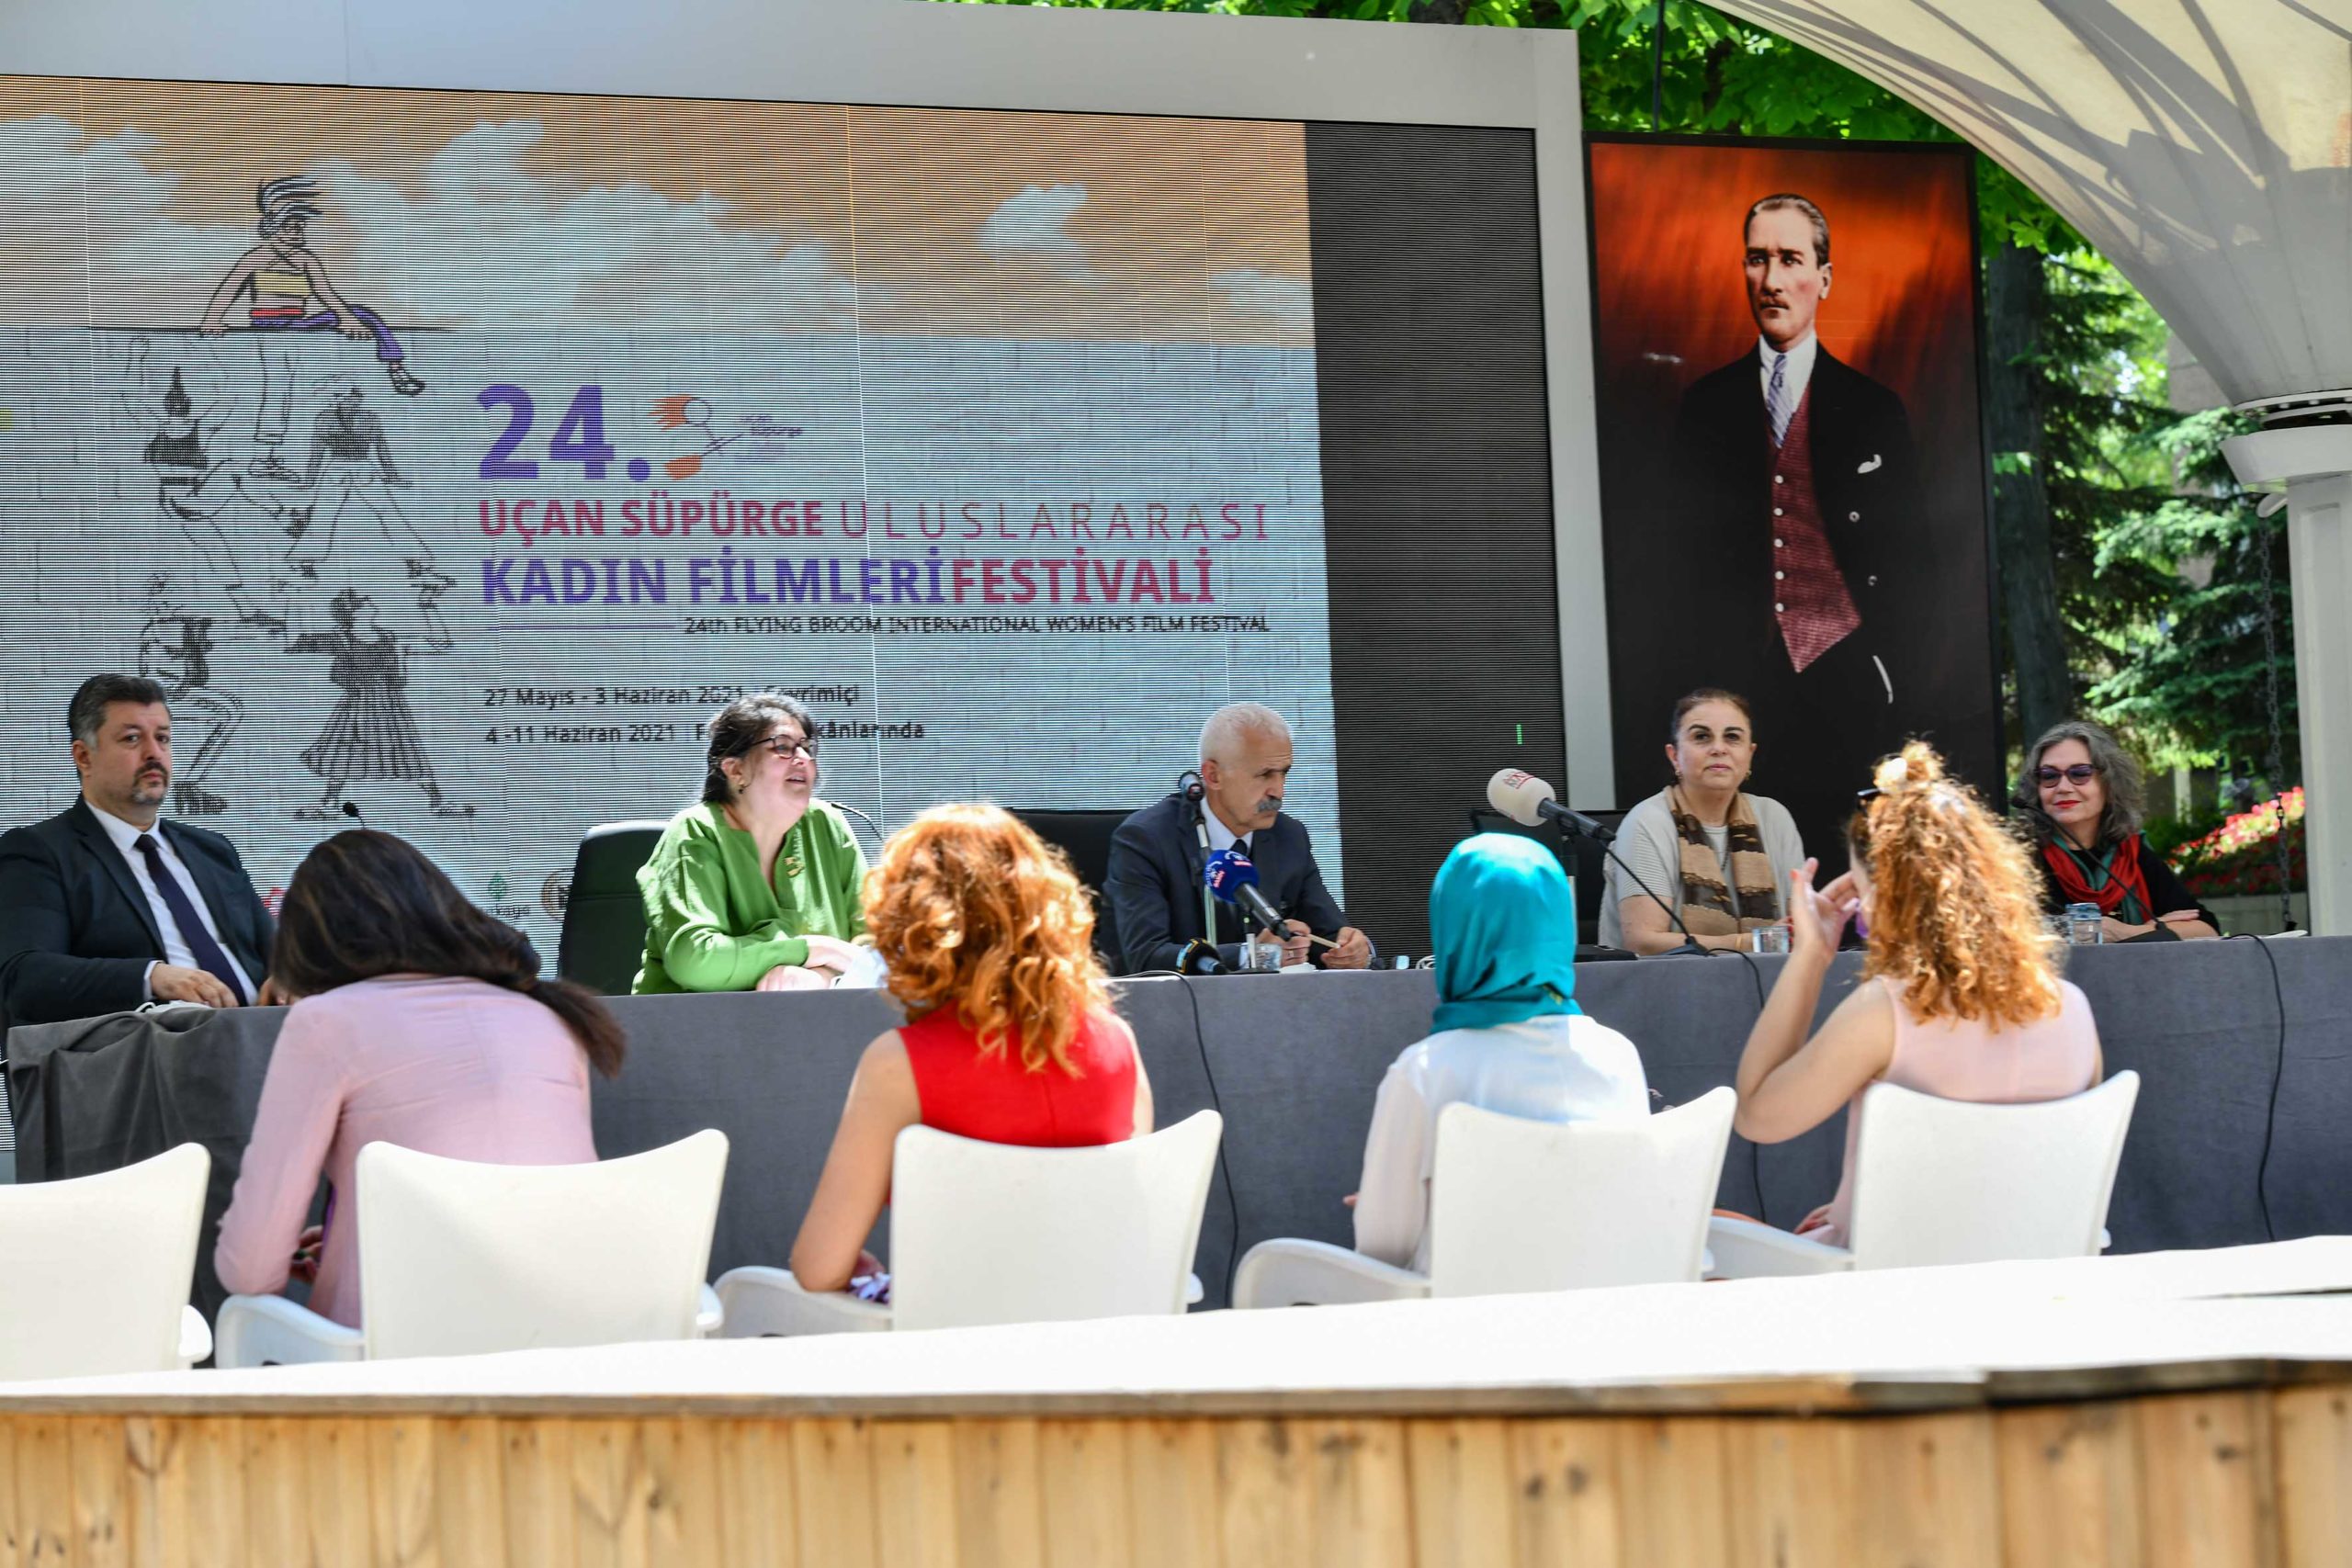  Ankara’da 24. Uçan Süpürge Uluslararası Kadın Filmleri Festivali Başladı